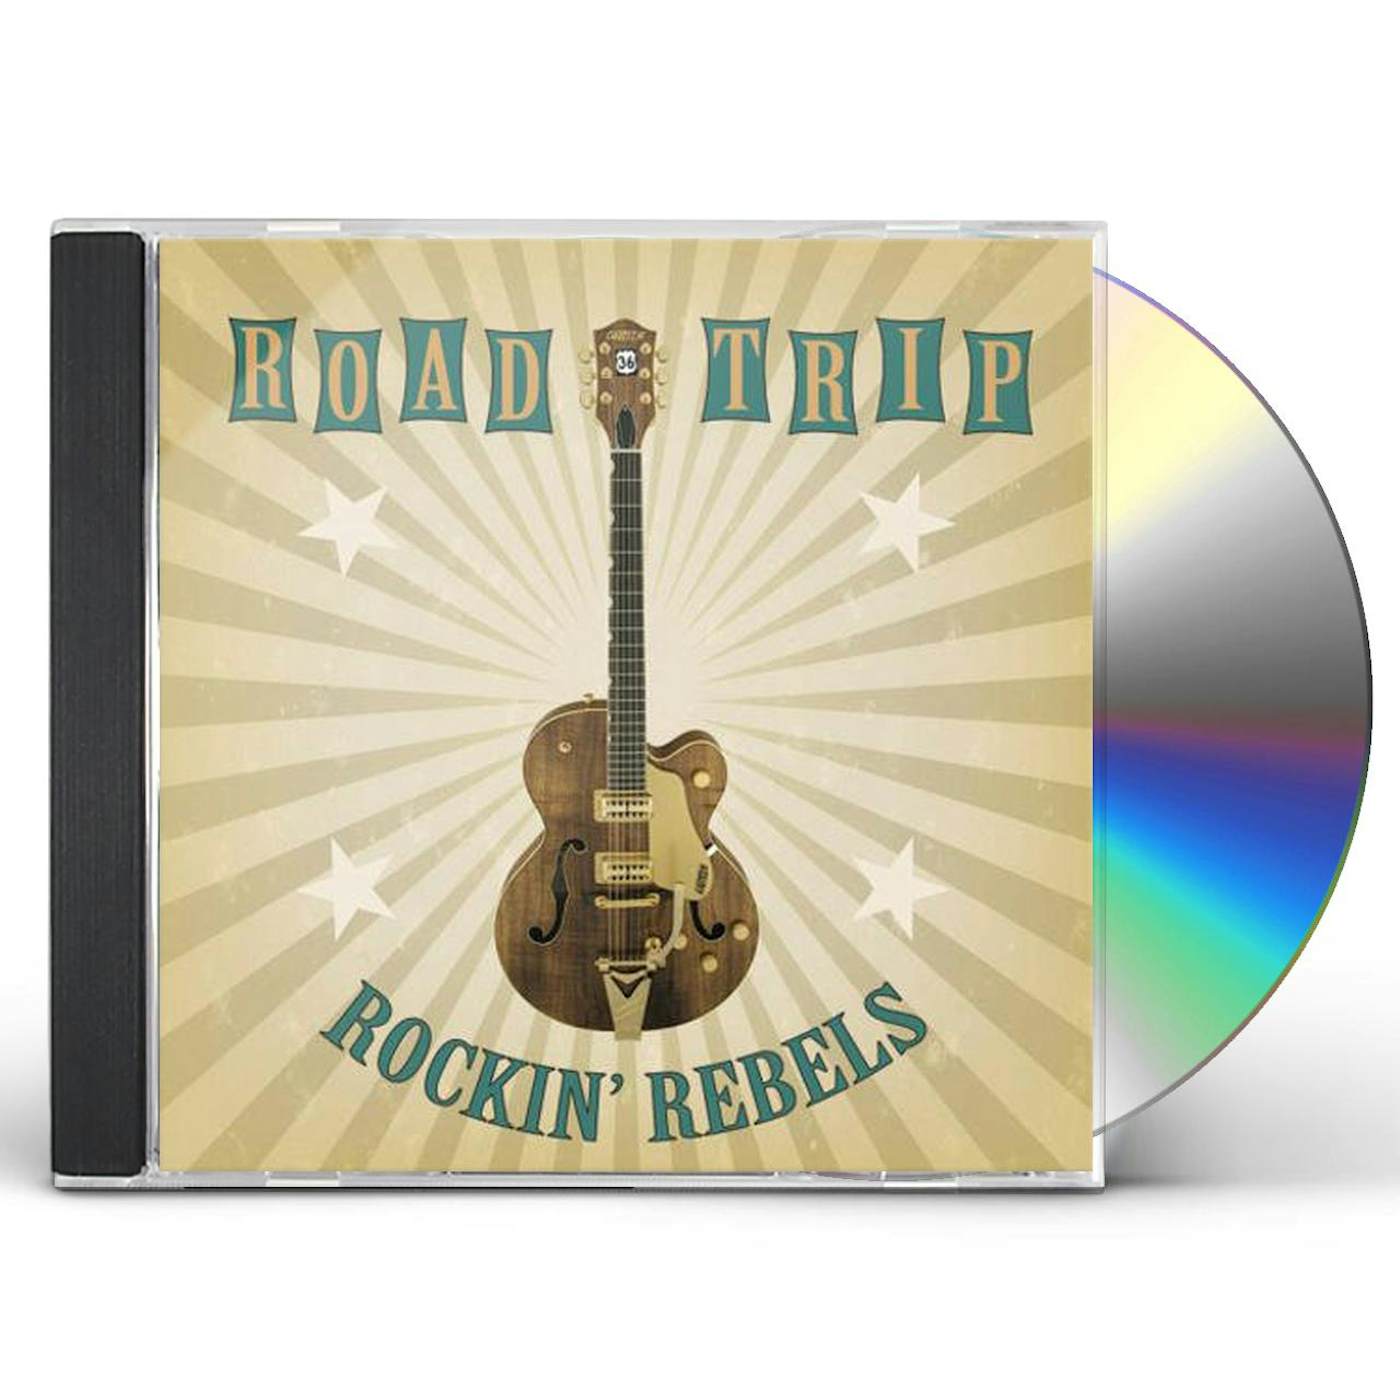 Rockin Rebels ROAD TRIP CD